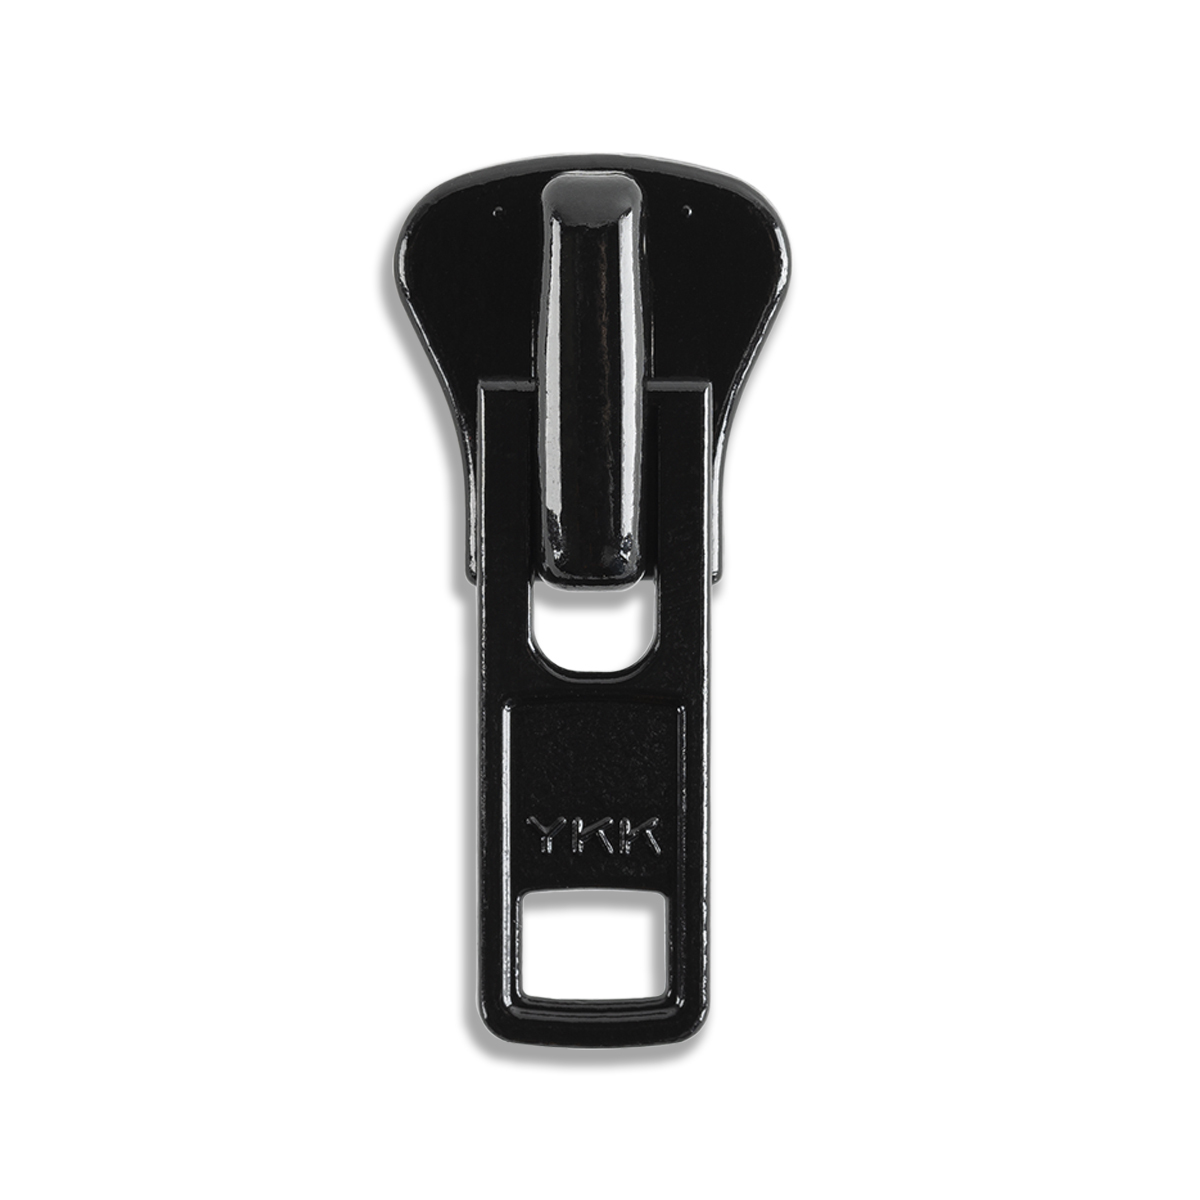 Zipper Repair Kit - #5 YKK Reversible Aluminum Auto Lock Sliders - 5 S